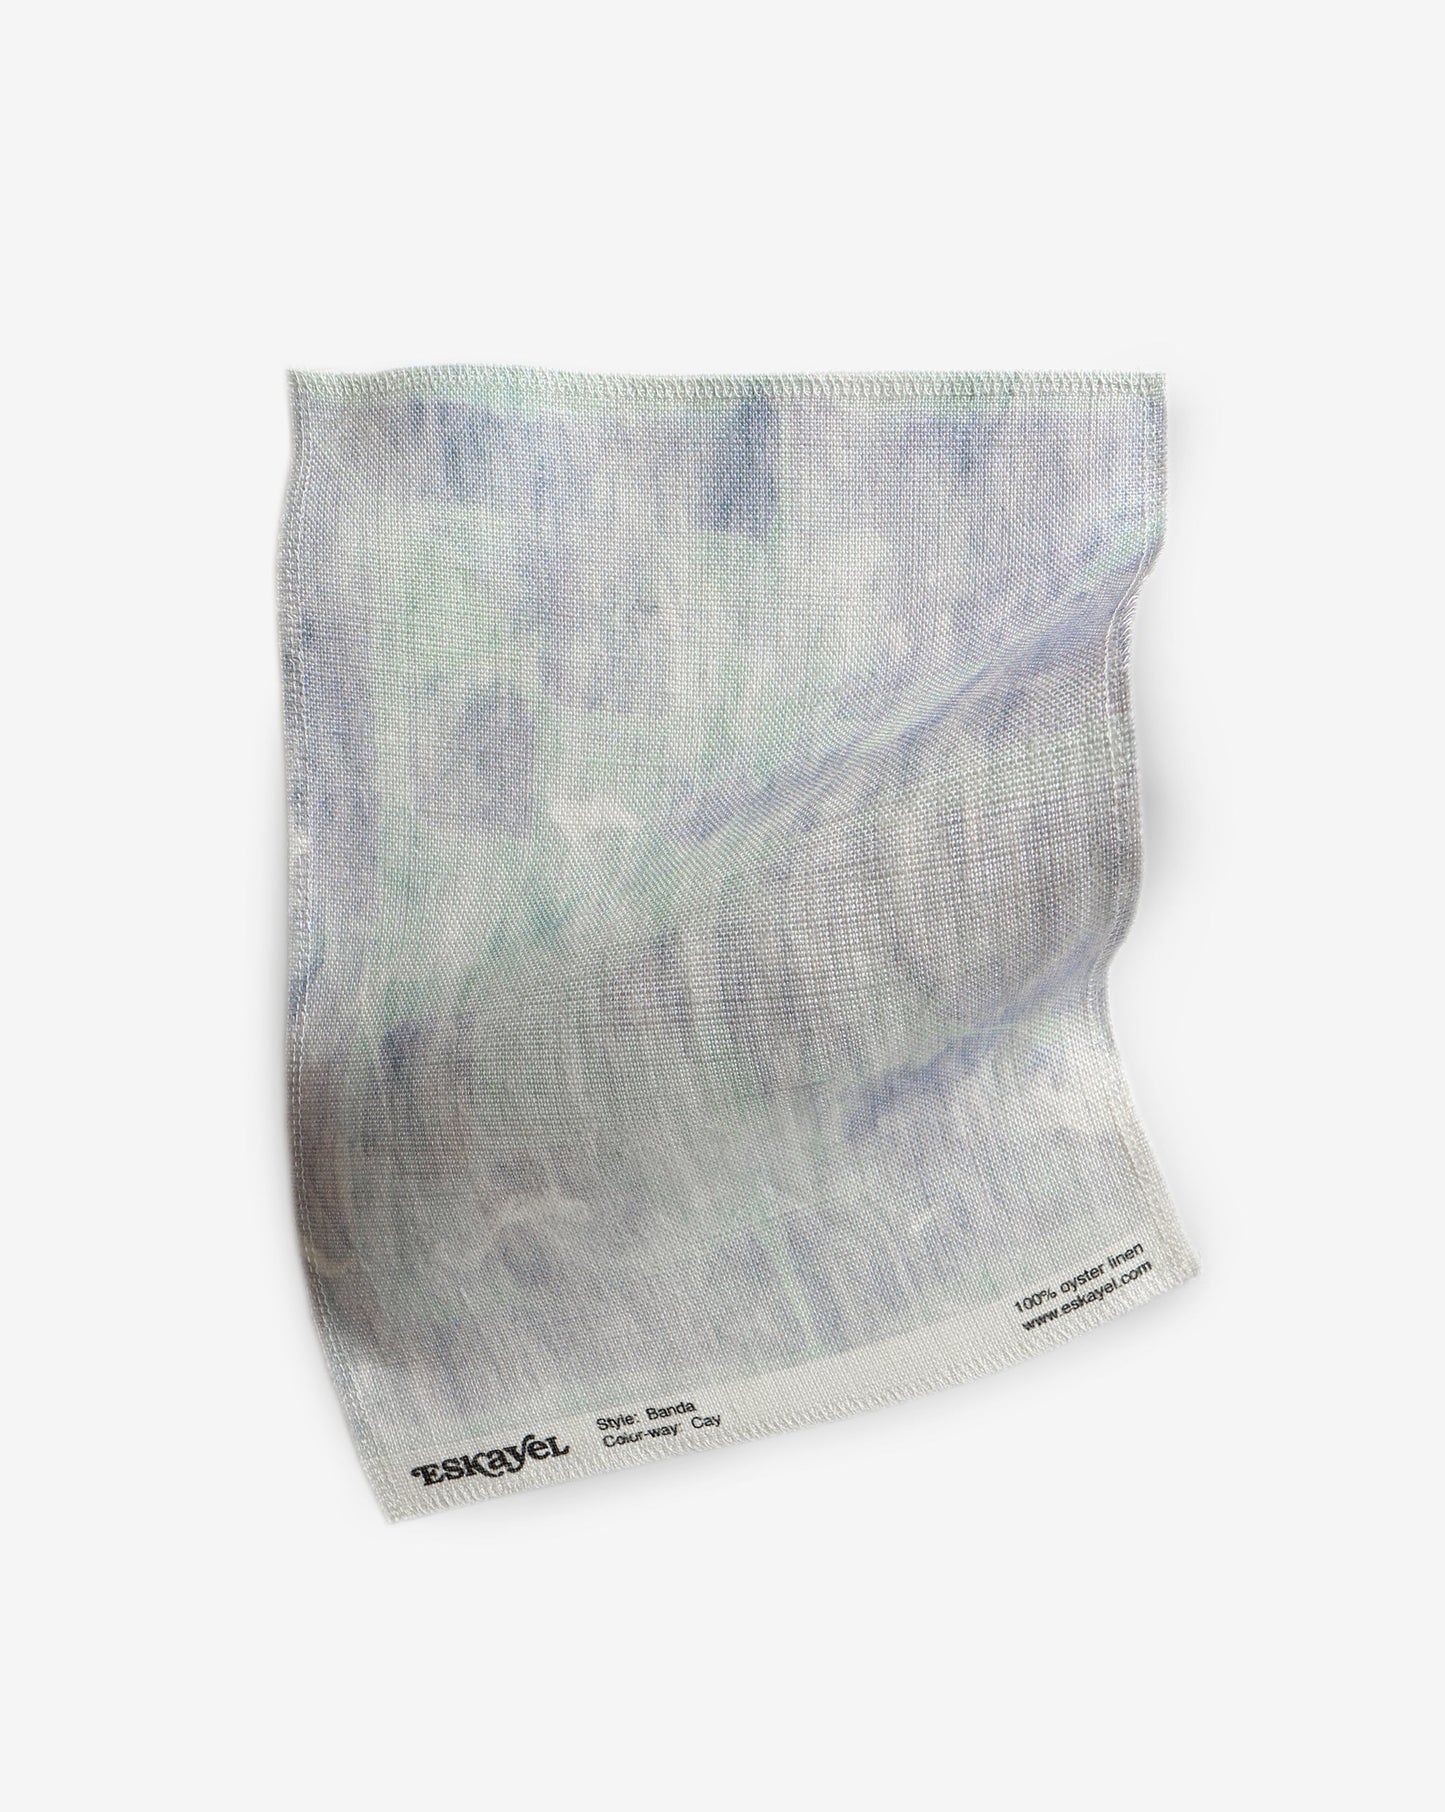 Banda Fabric Sample||Cay